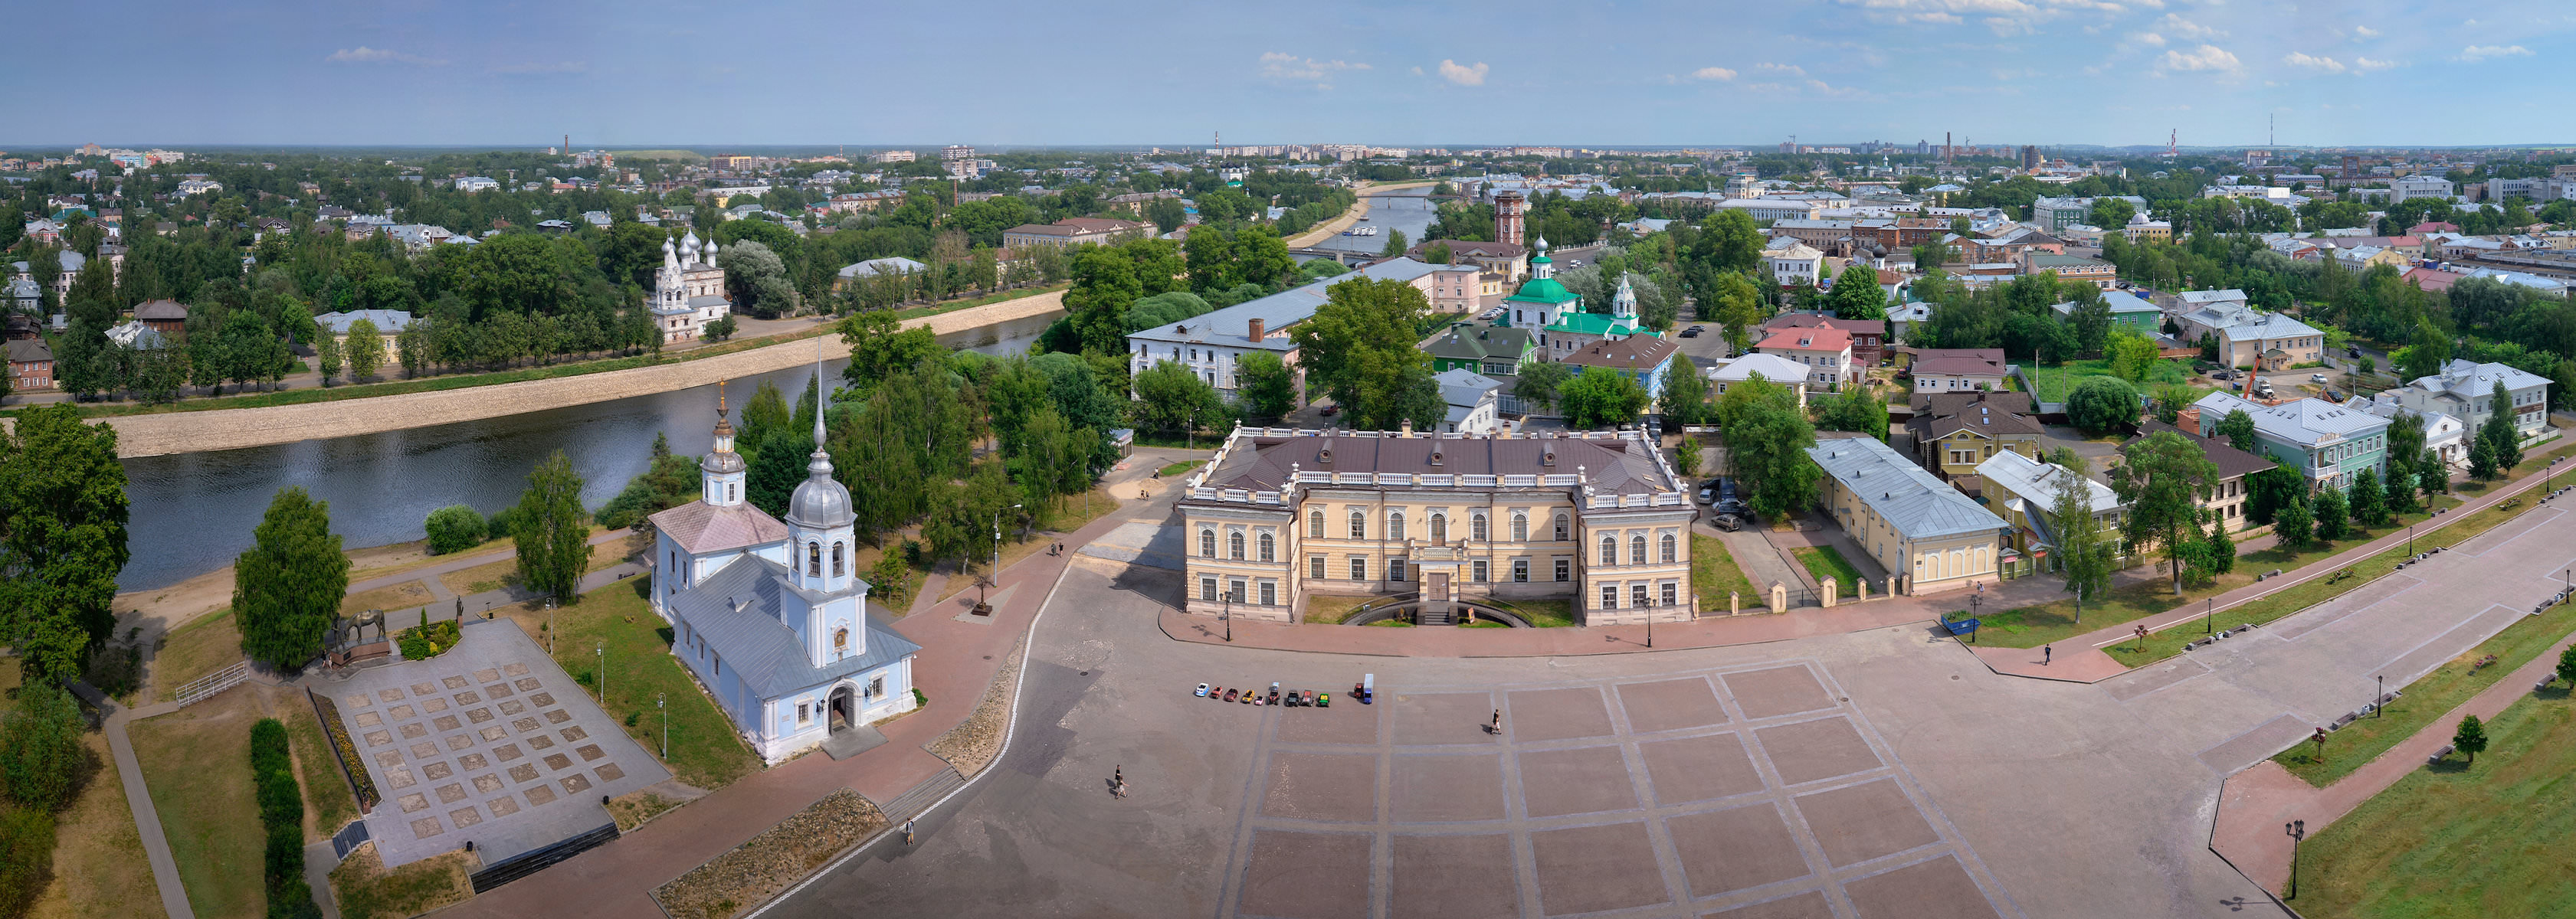 Вологда с колокольни Софийского собора